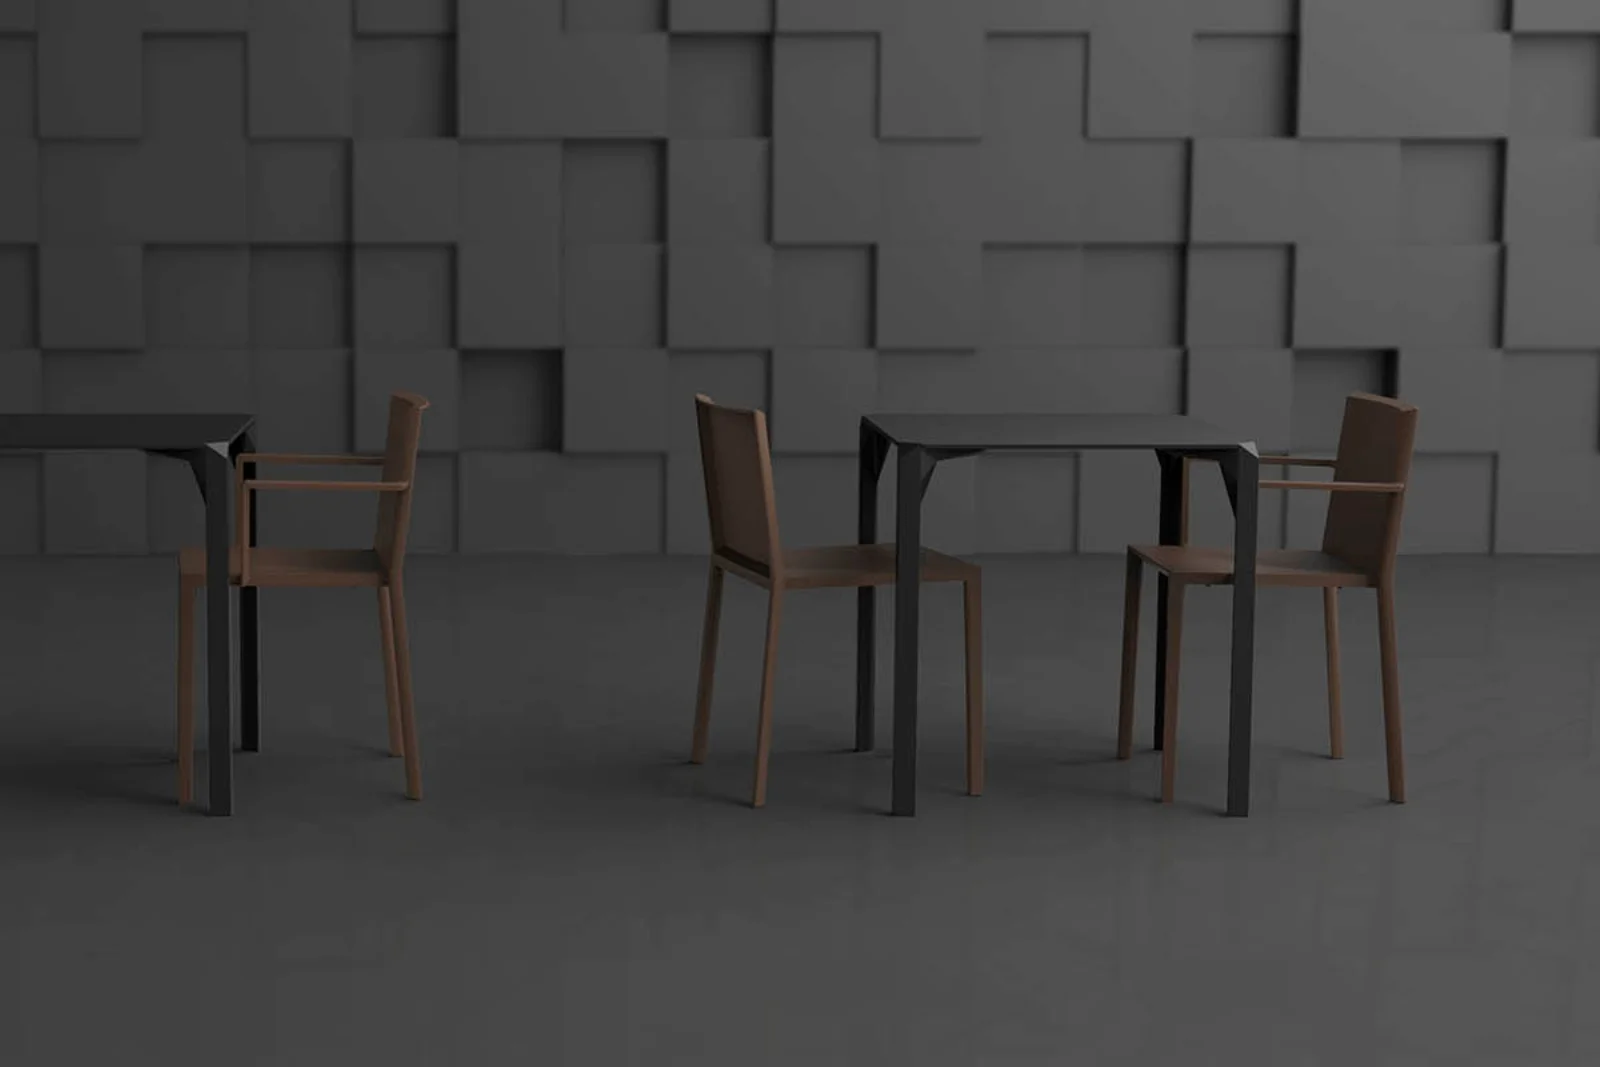 Vondom Quartz | Stuhl Weiß